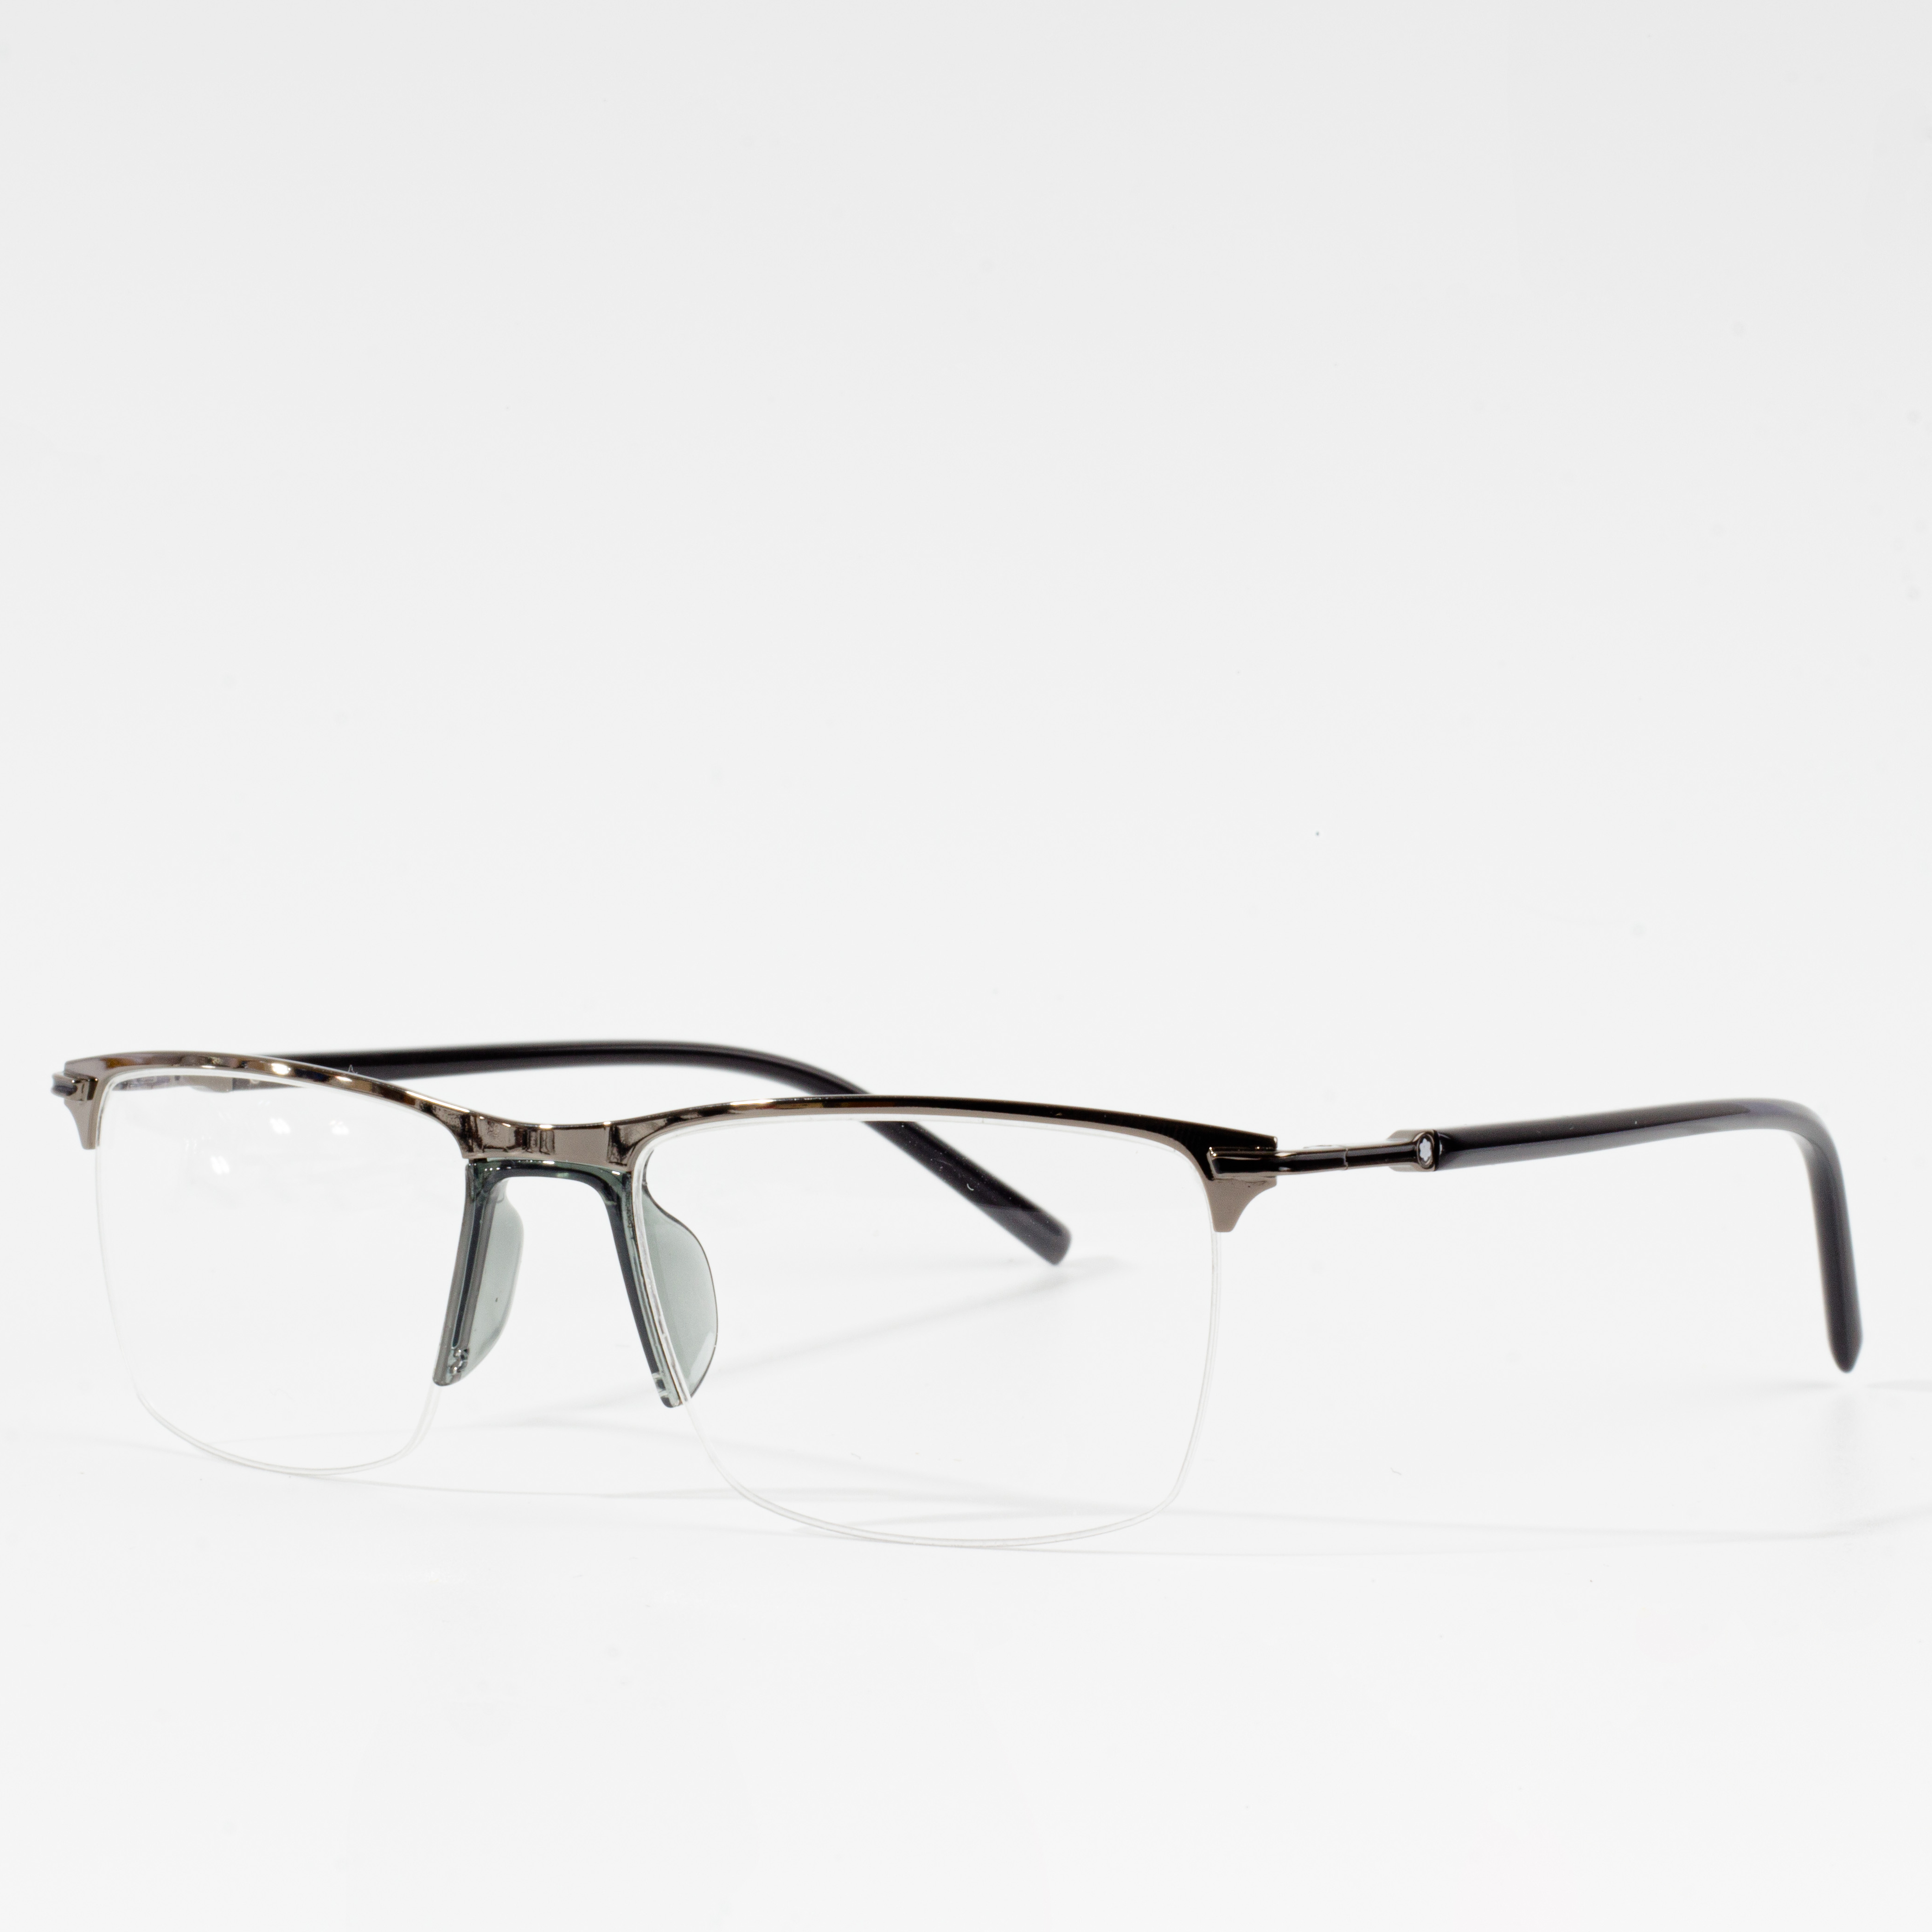 sebonoang Optical Eyeglasses Frames